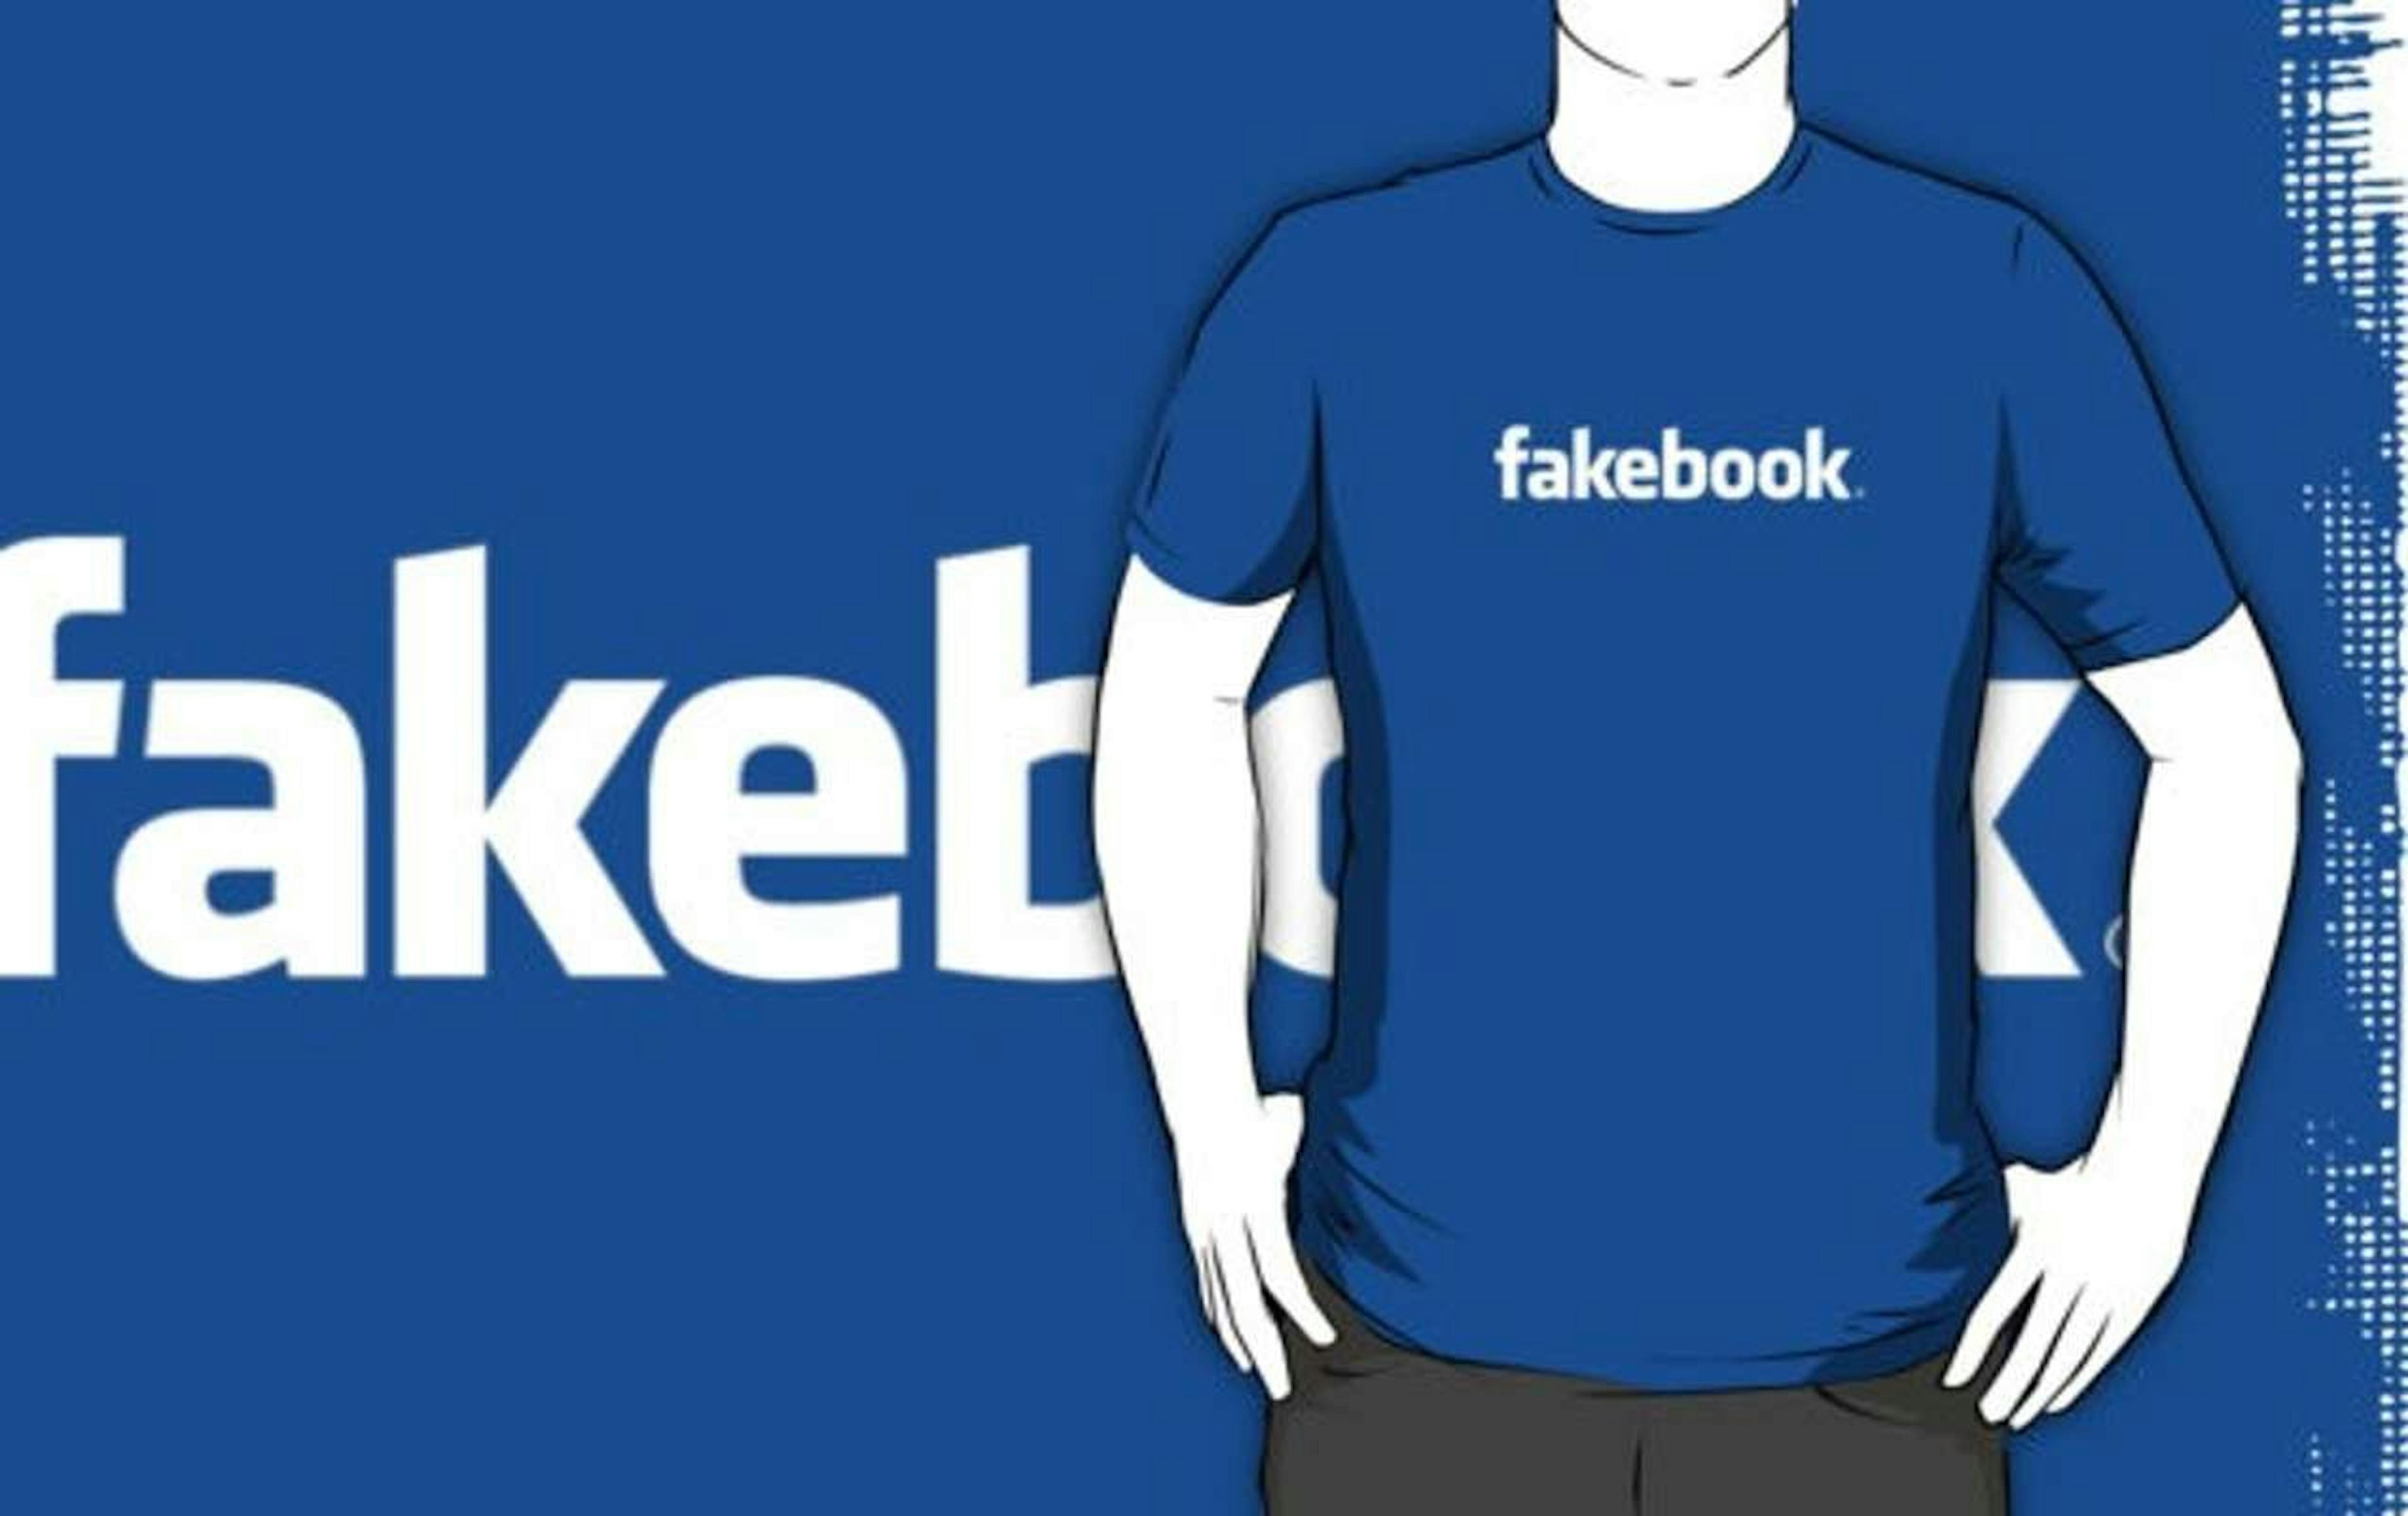 featured image - La imperdonable tolerancia de Facebook hacia los perfiles falsos y las operaciones fraudulentas